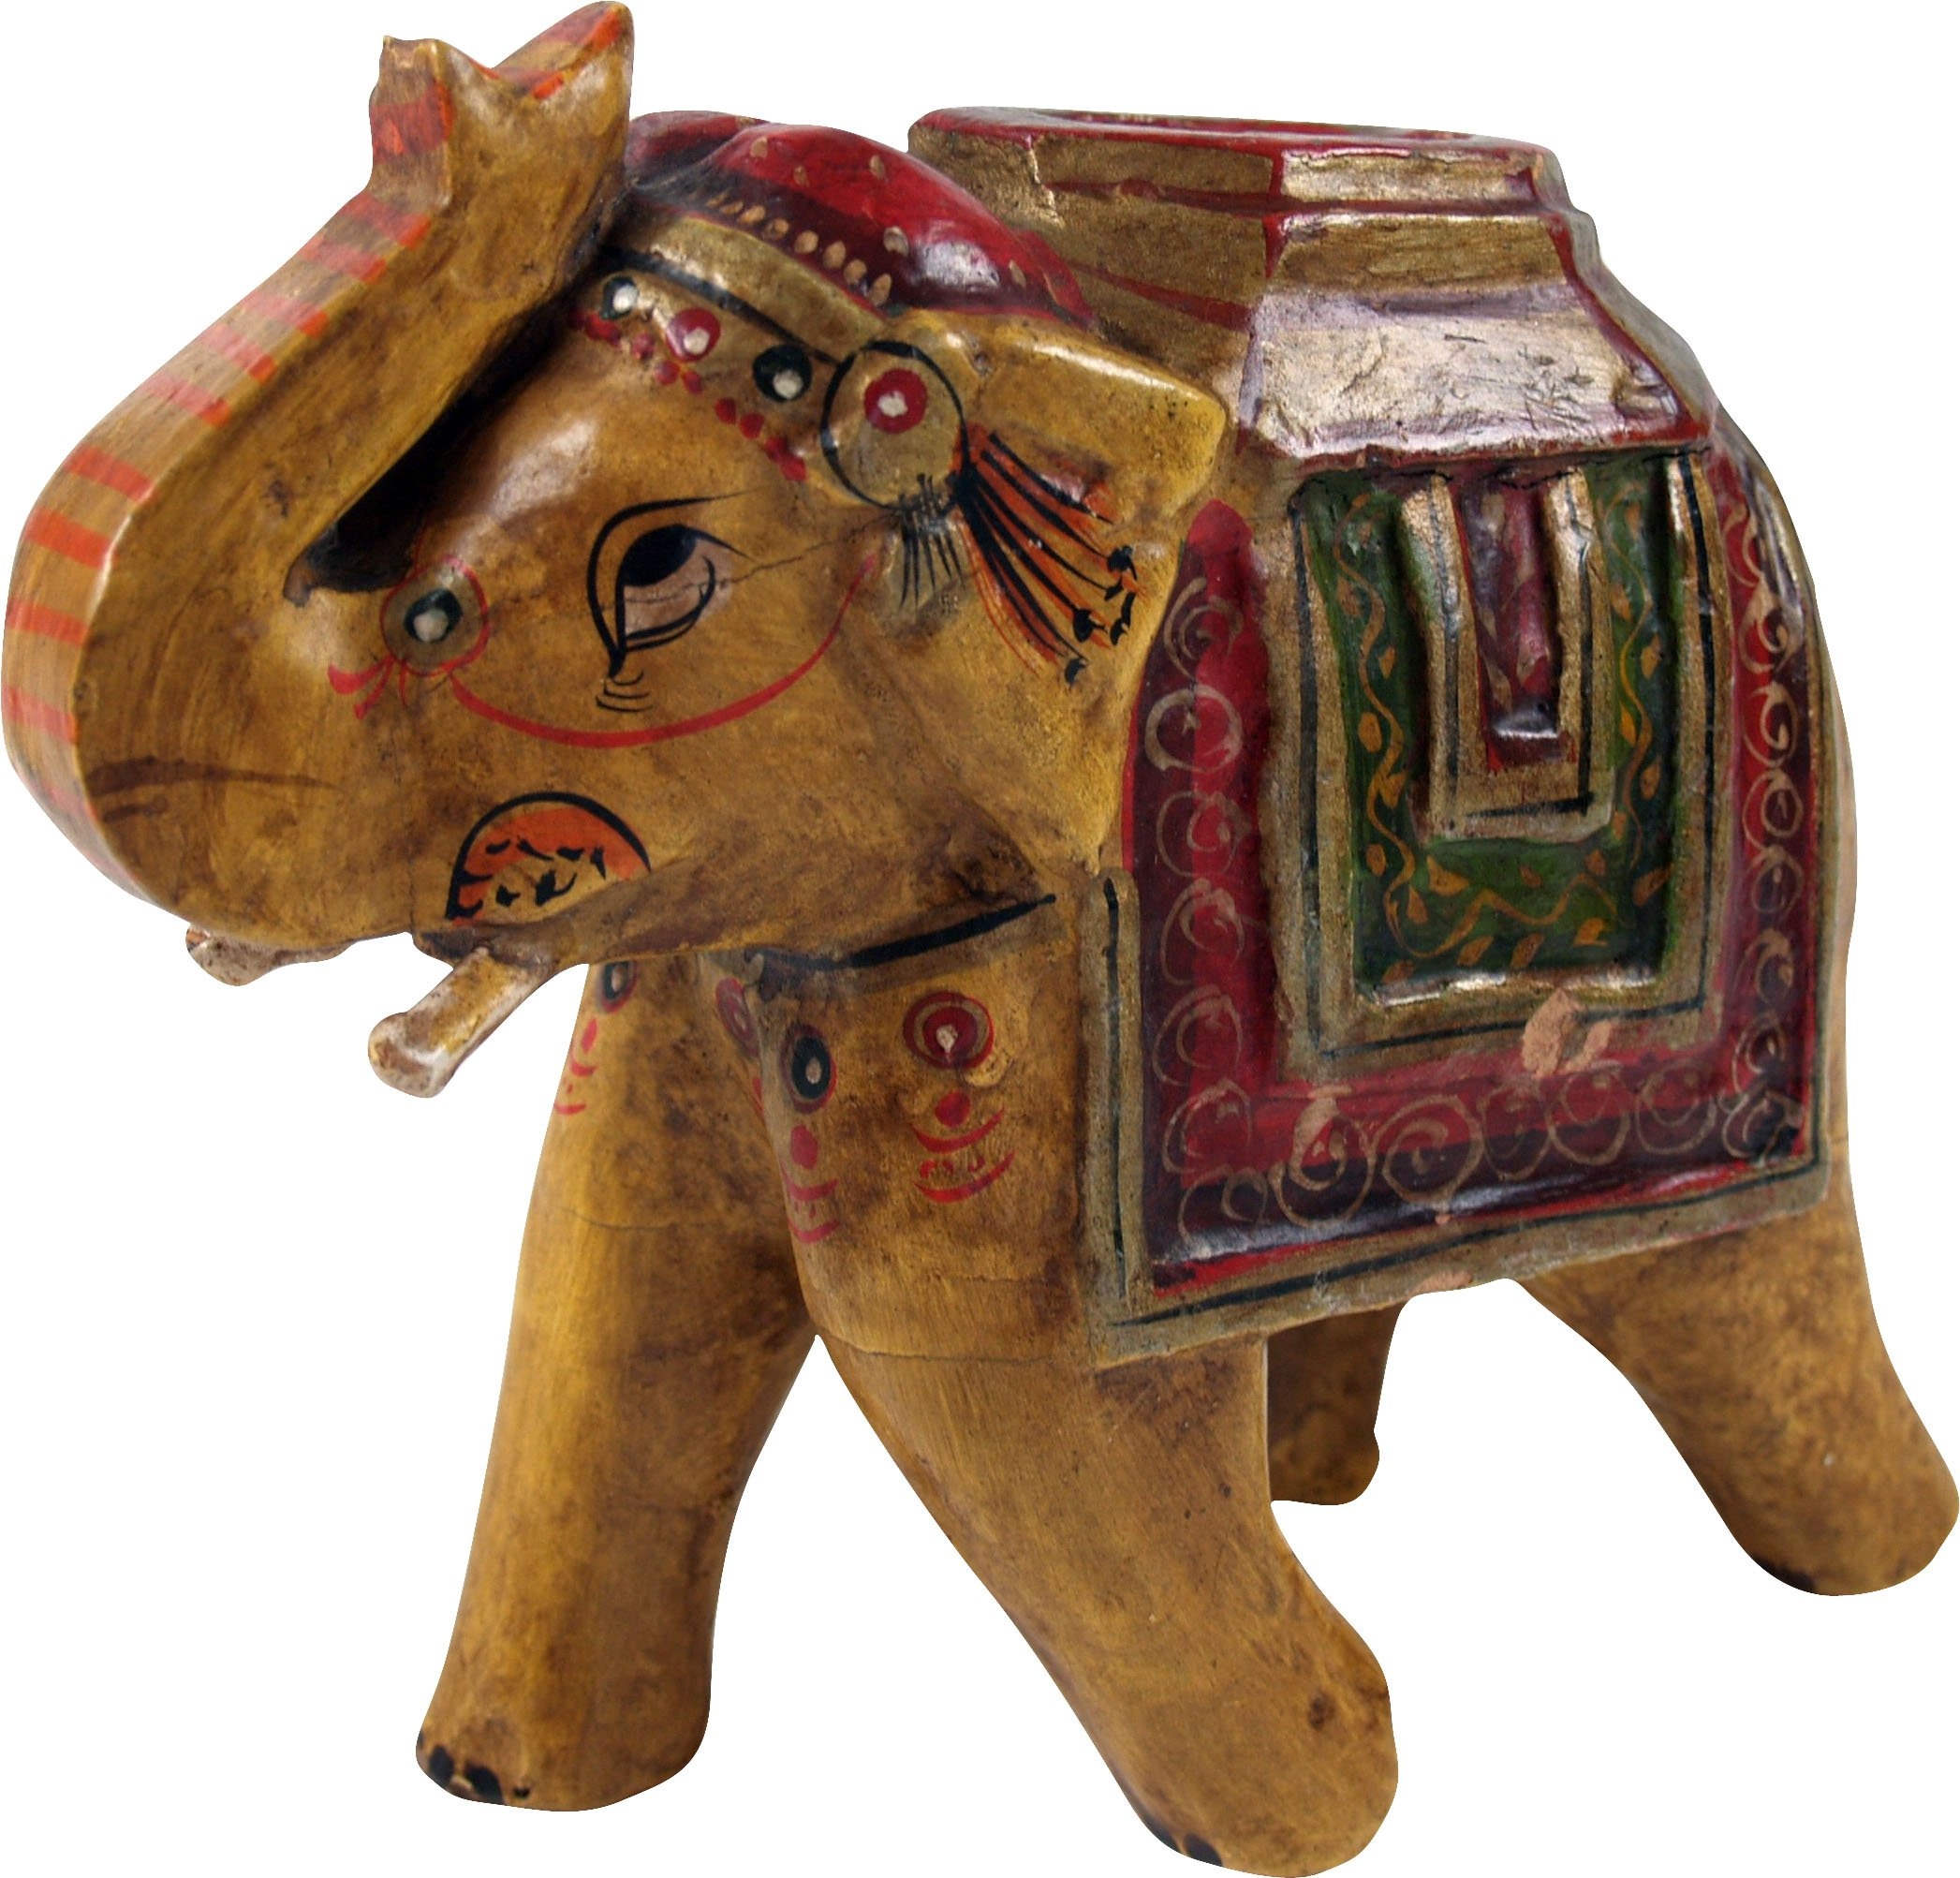 GURU SHOP Deko Elefant aus Indien, Bemalter Indischer Holzelefant, Skulptur Elefant, Gelb, Farbe: Gelb, 15x18x8 cm, Tierfiguren